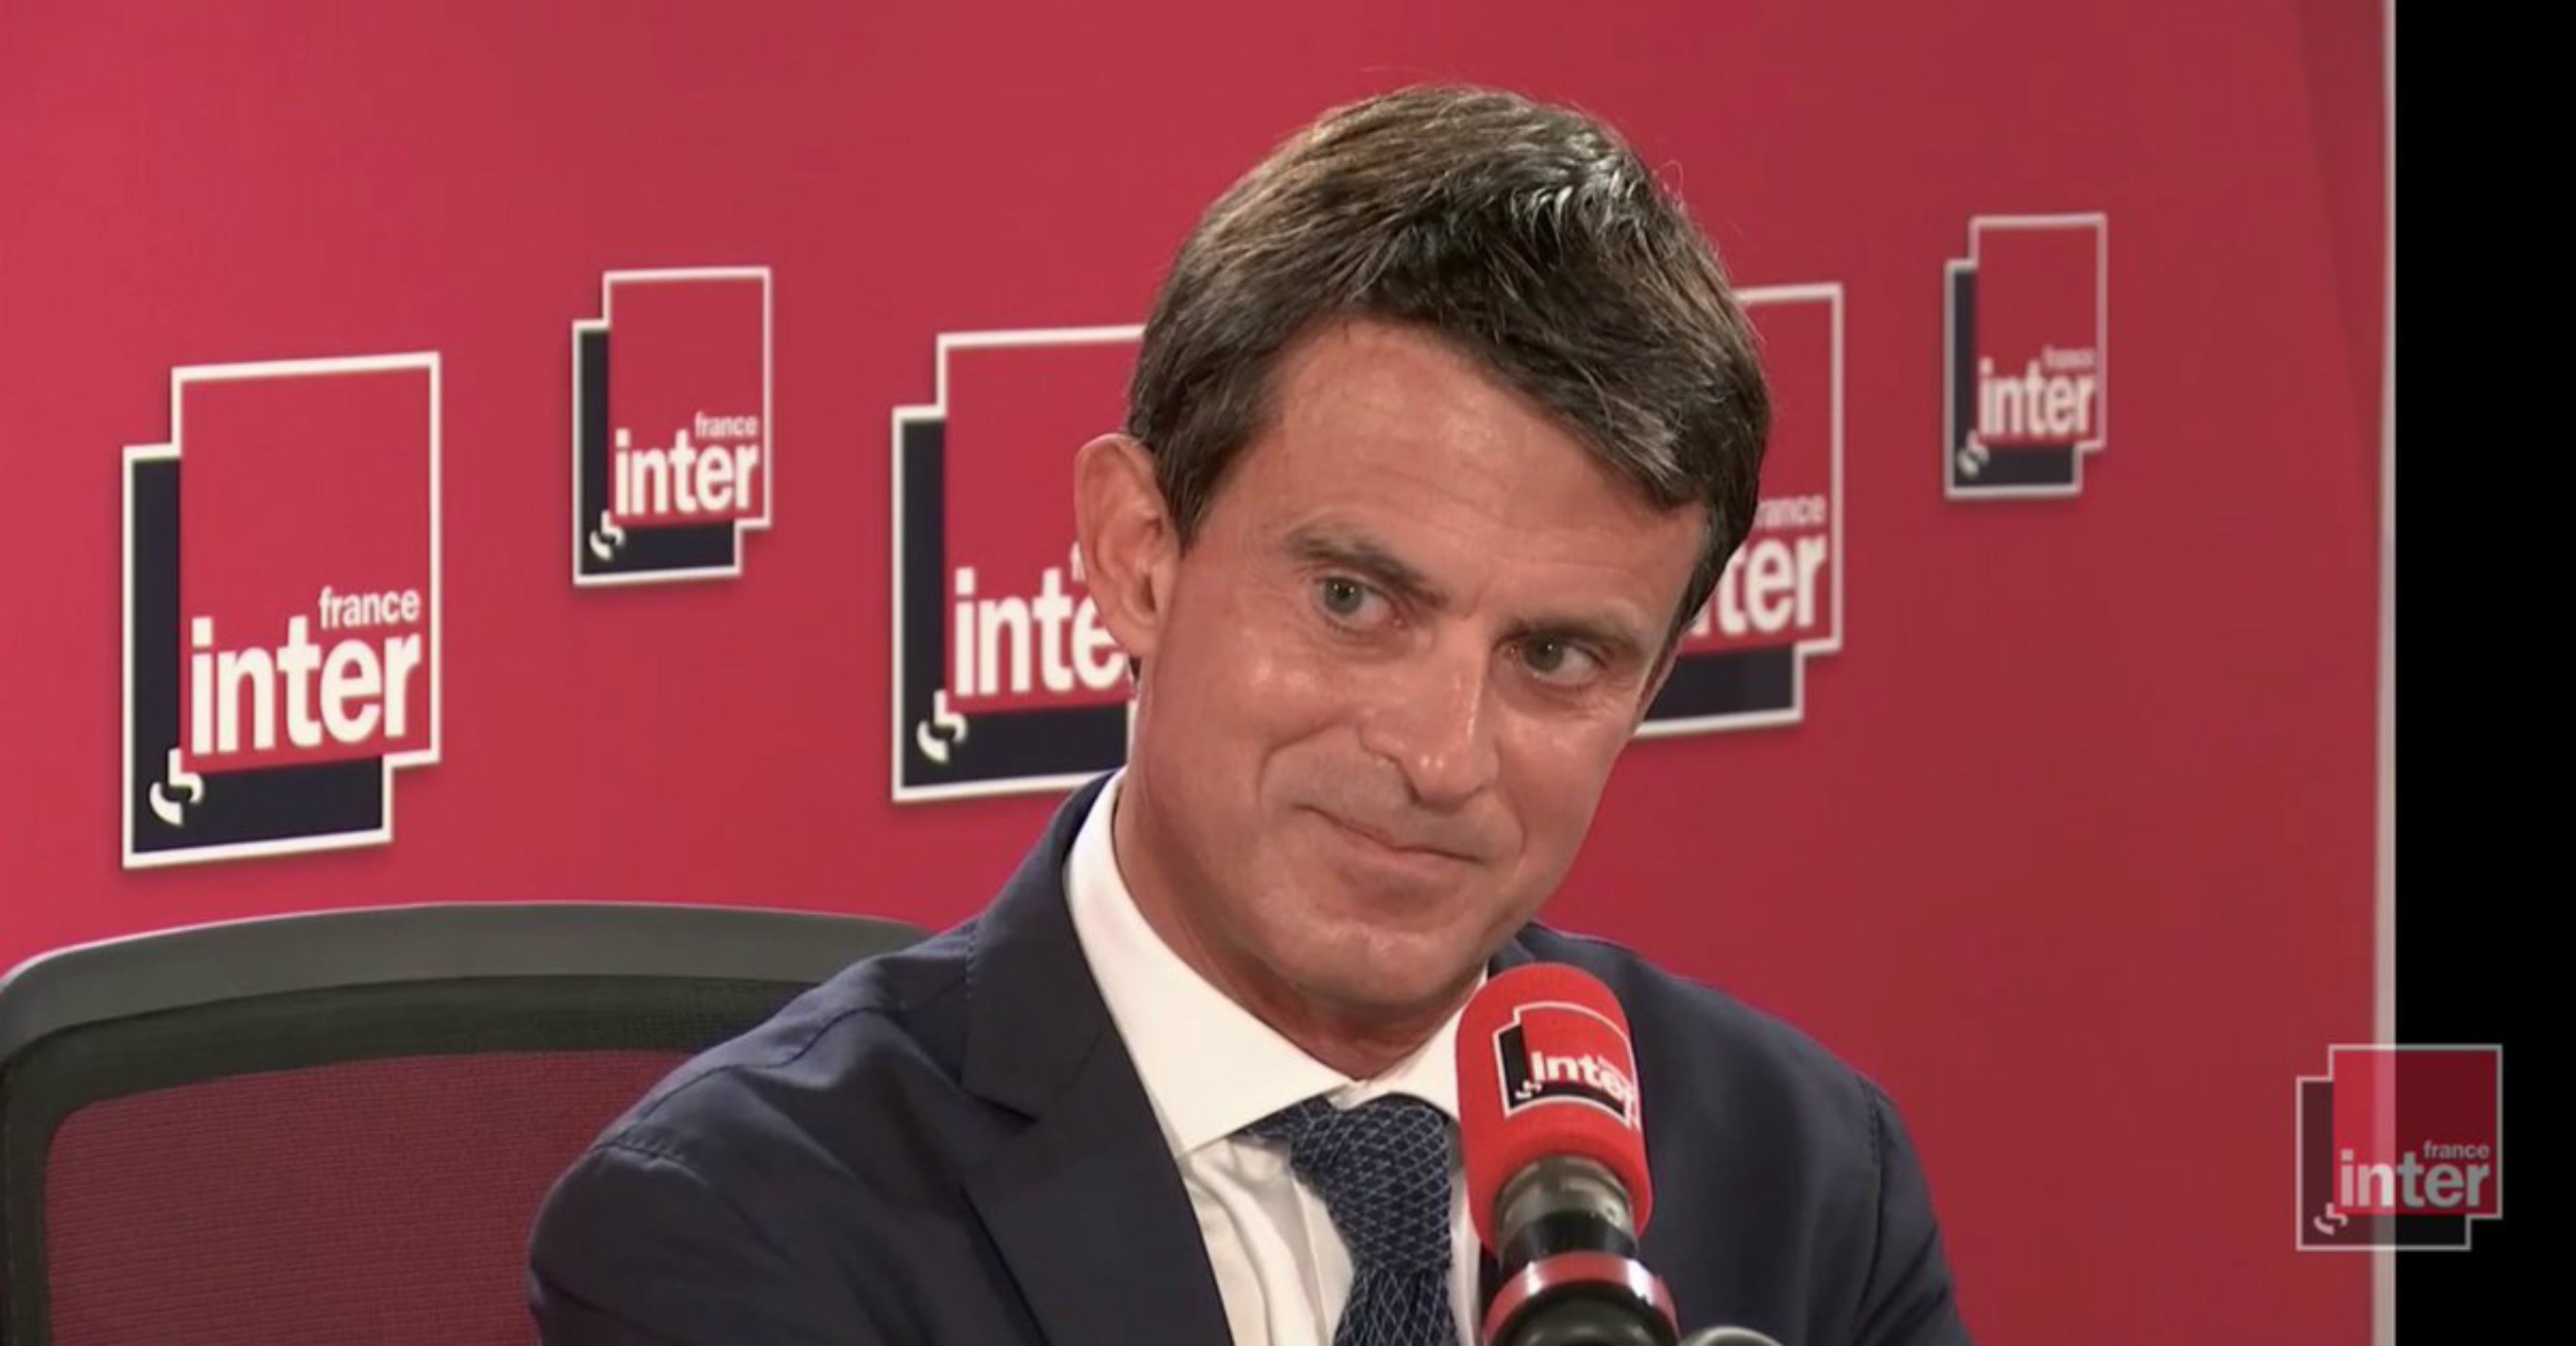 És indepe el community manager de Manuel Valls?